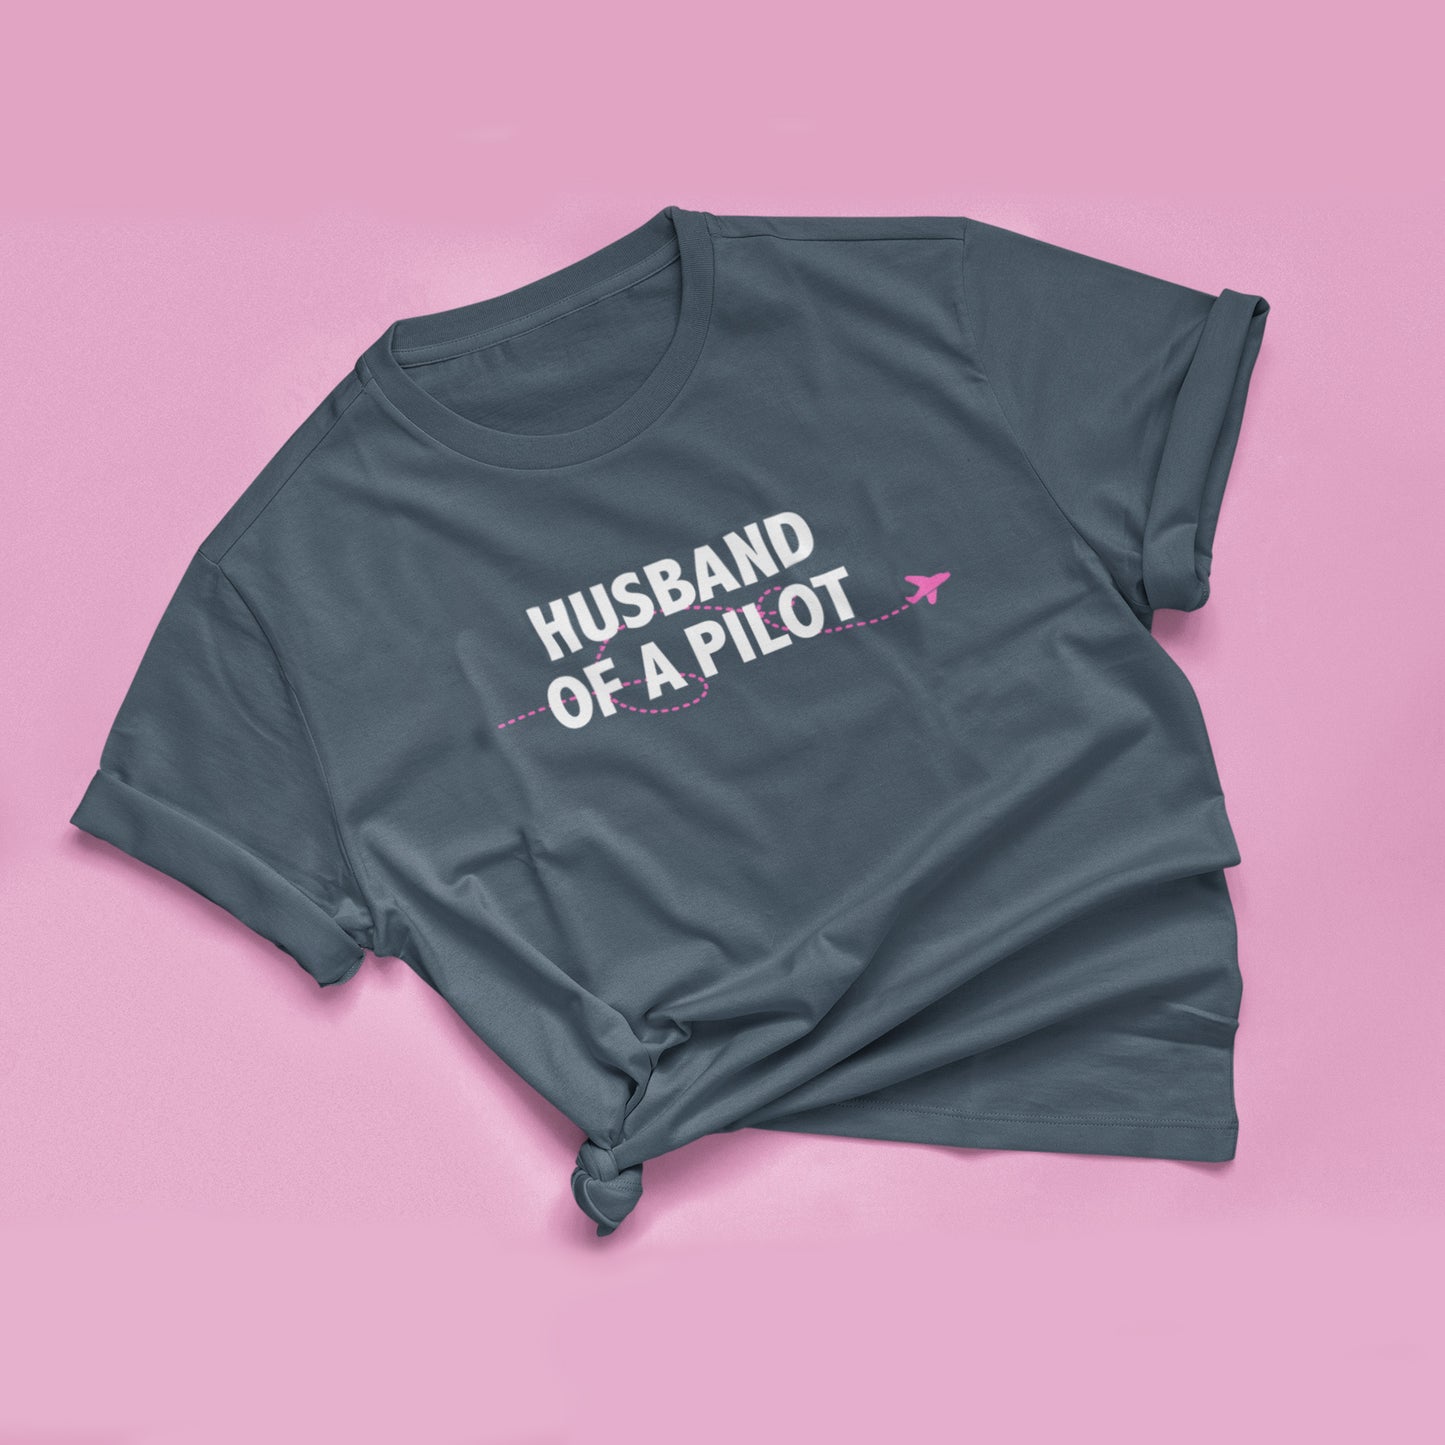 Husband of the/a Pilot T-shirt